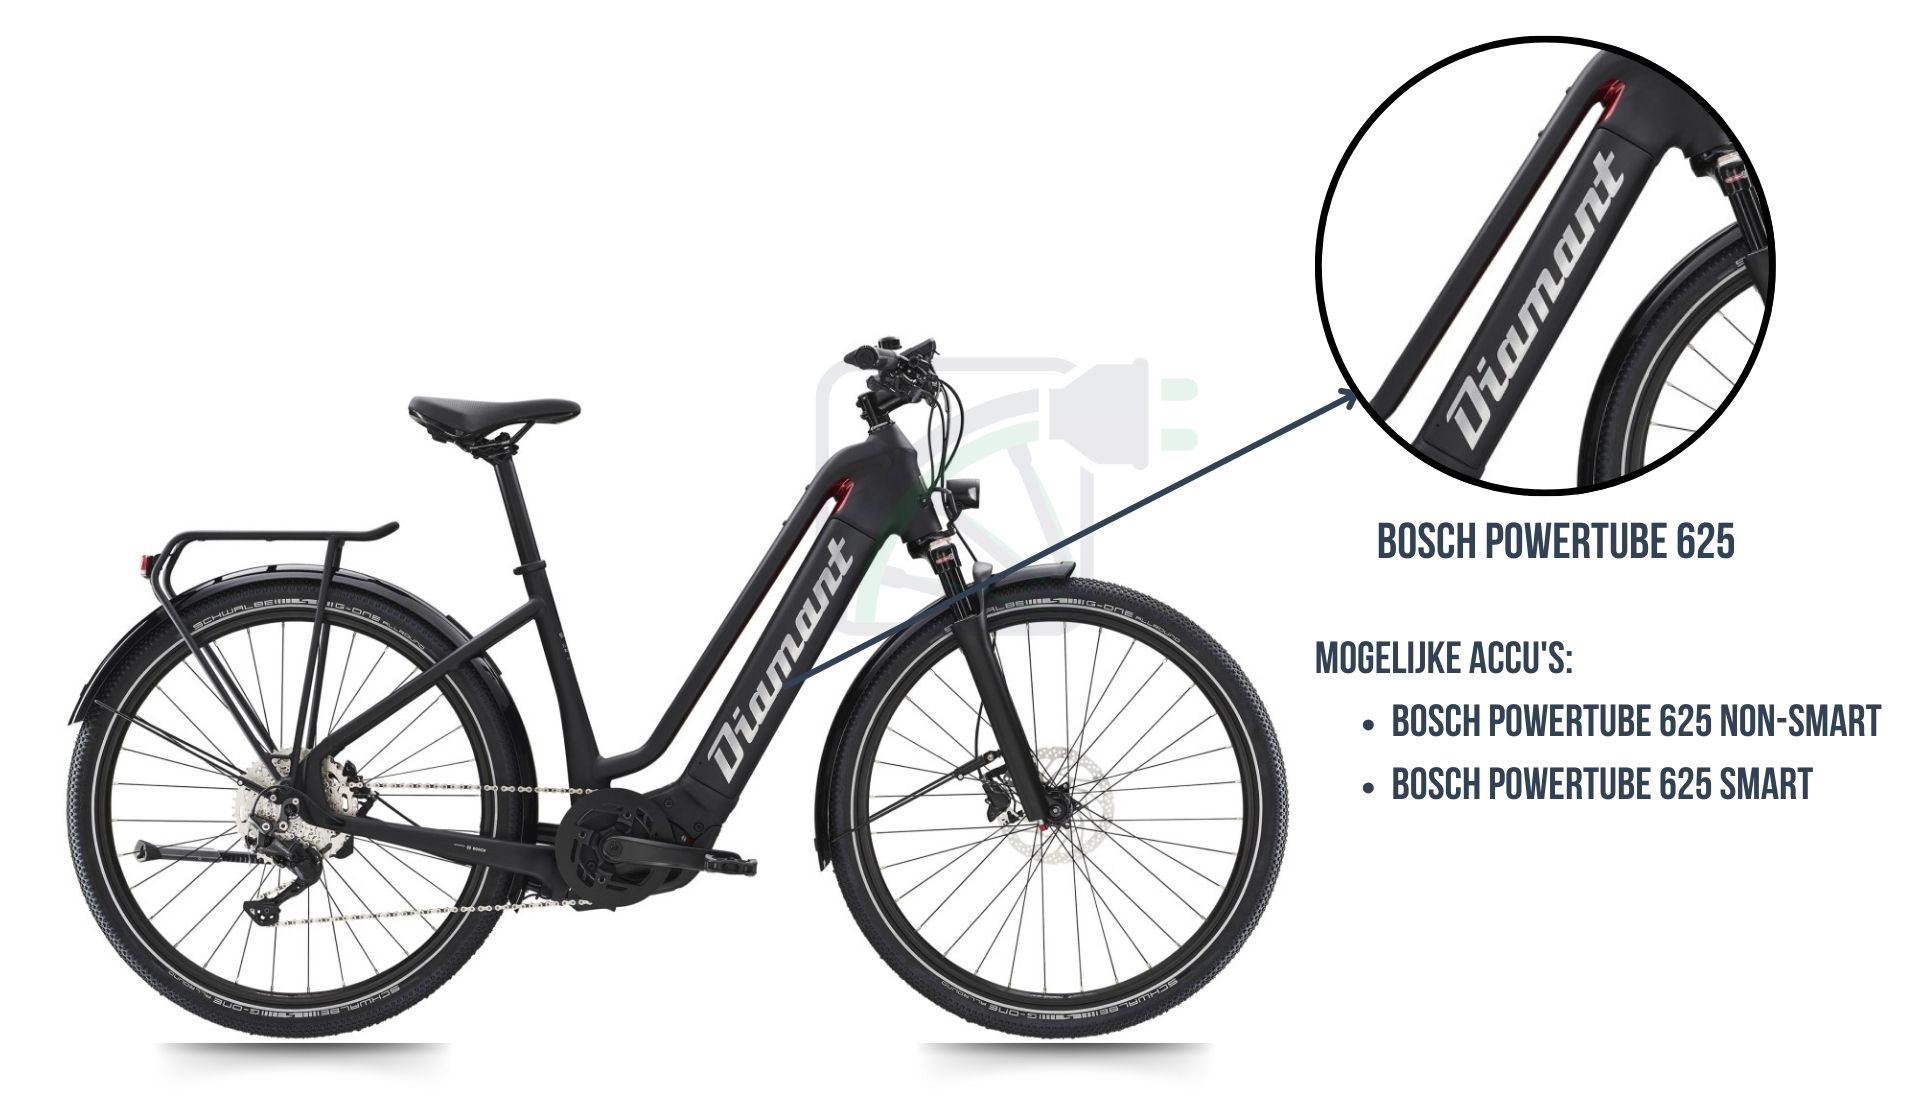  Das Diamant Zouma Elektrofahrrad, einschließlich der zu diesem Fahrrad gehörenden Fahrradbatterie. Dies ist die Bosch Powertube 625 SMART oder die Bosch Powertube 625 non-SMART.